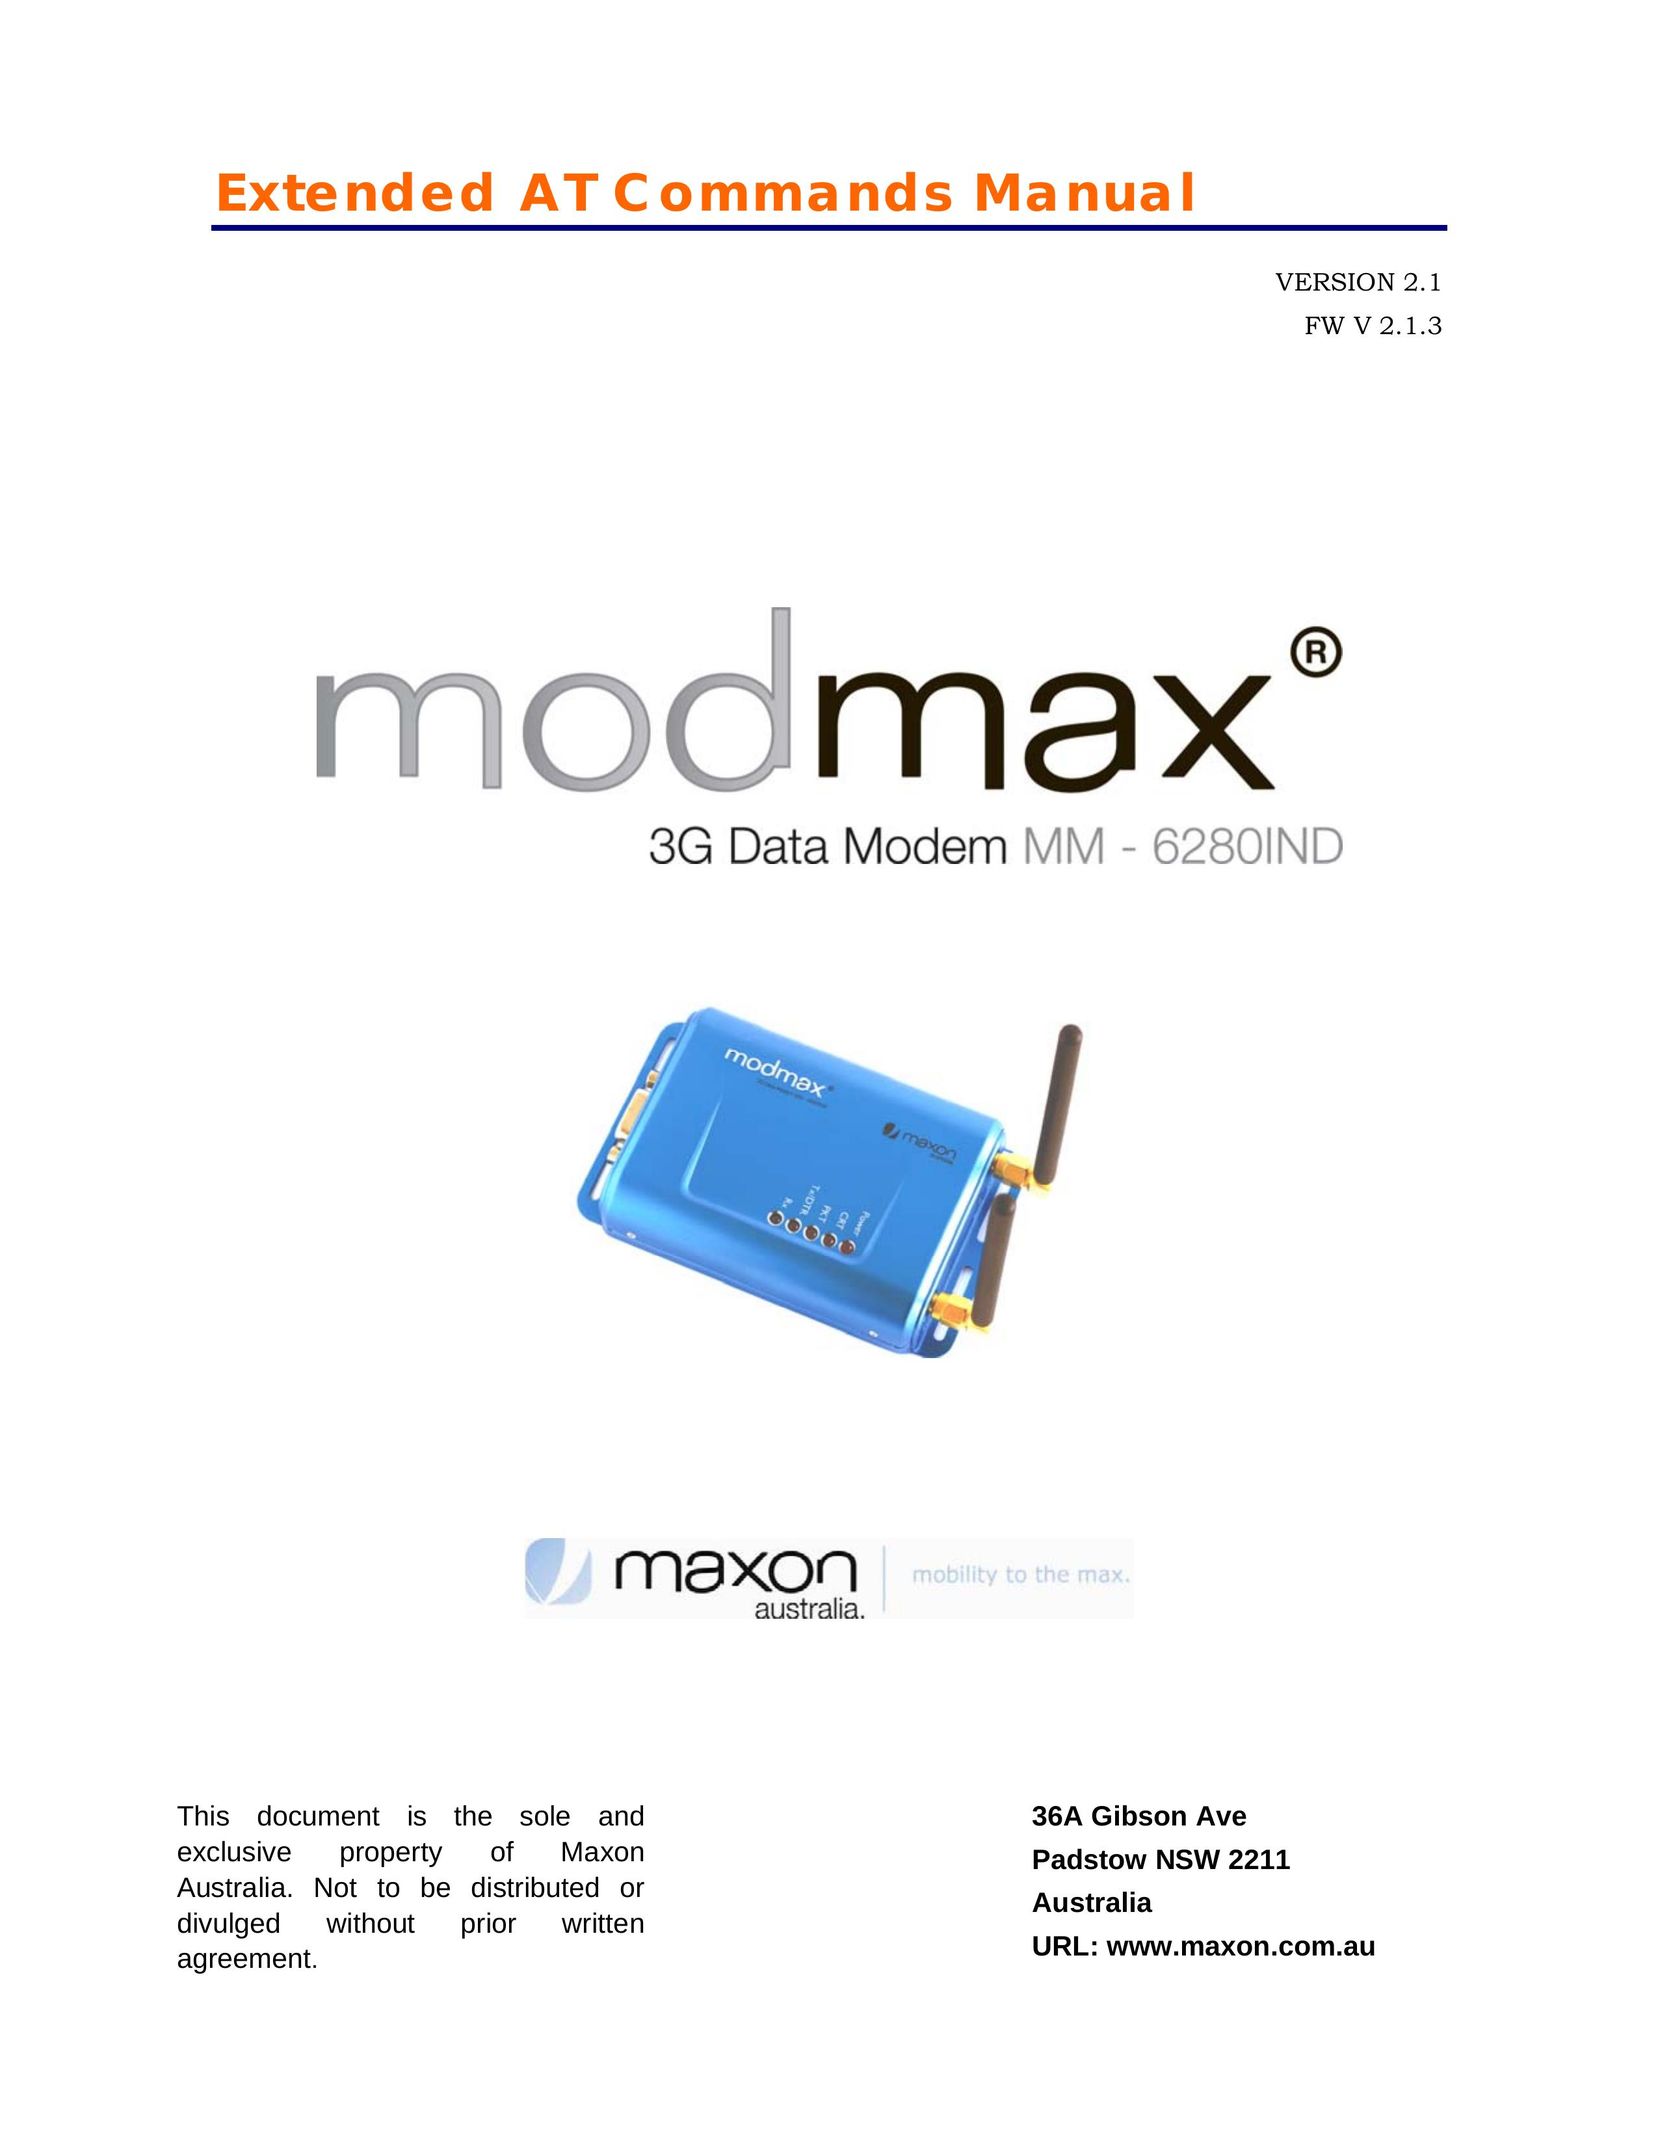 Maxon Telecom MM-6280IND Modem User Manual